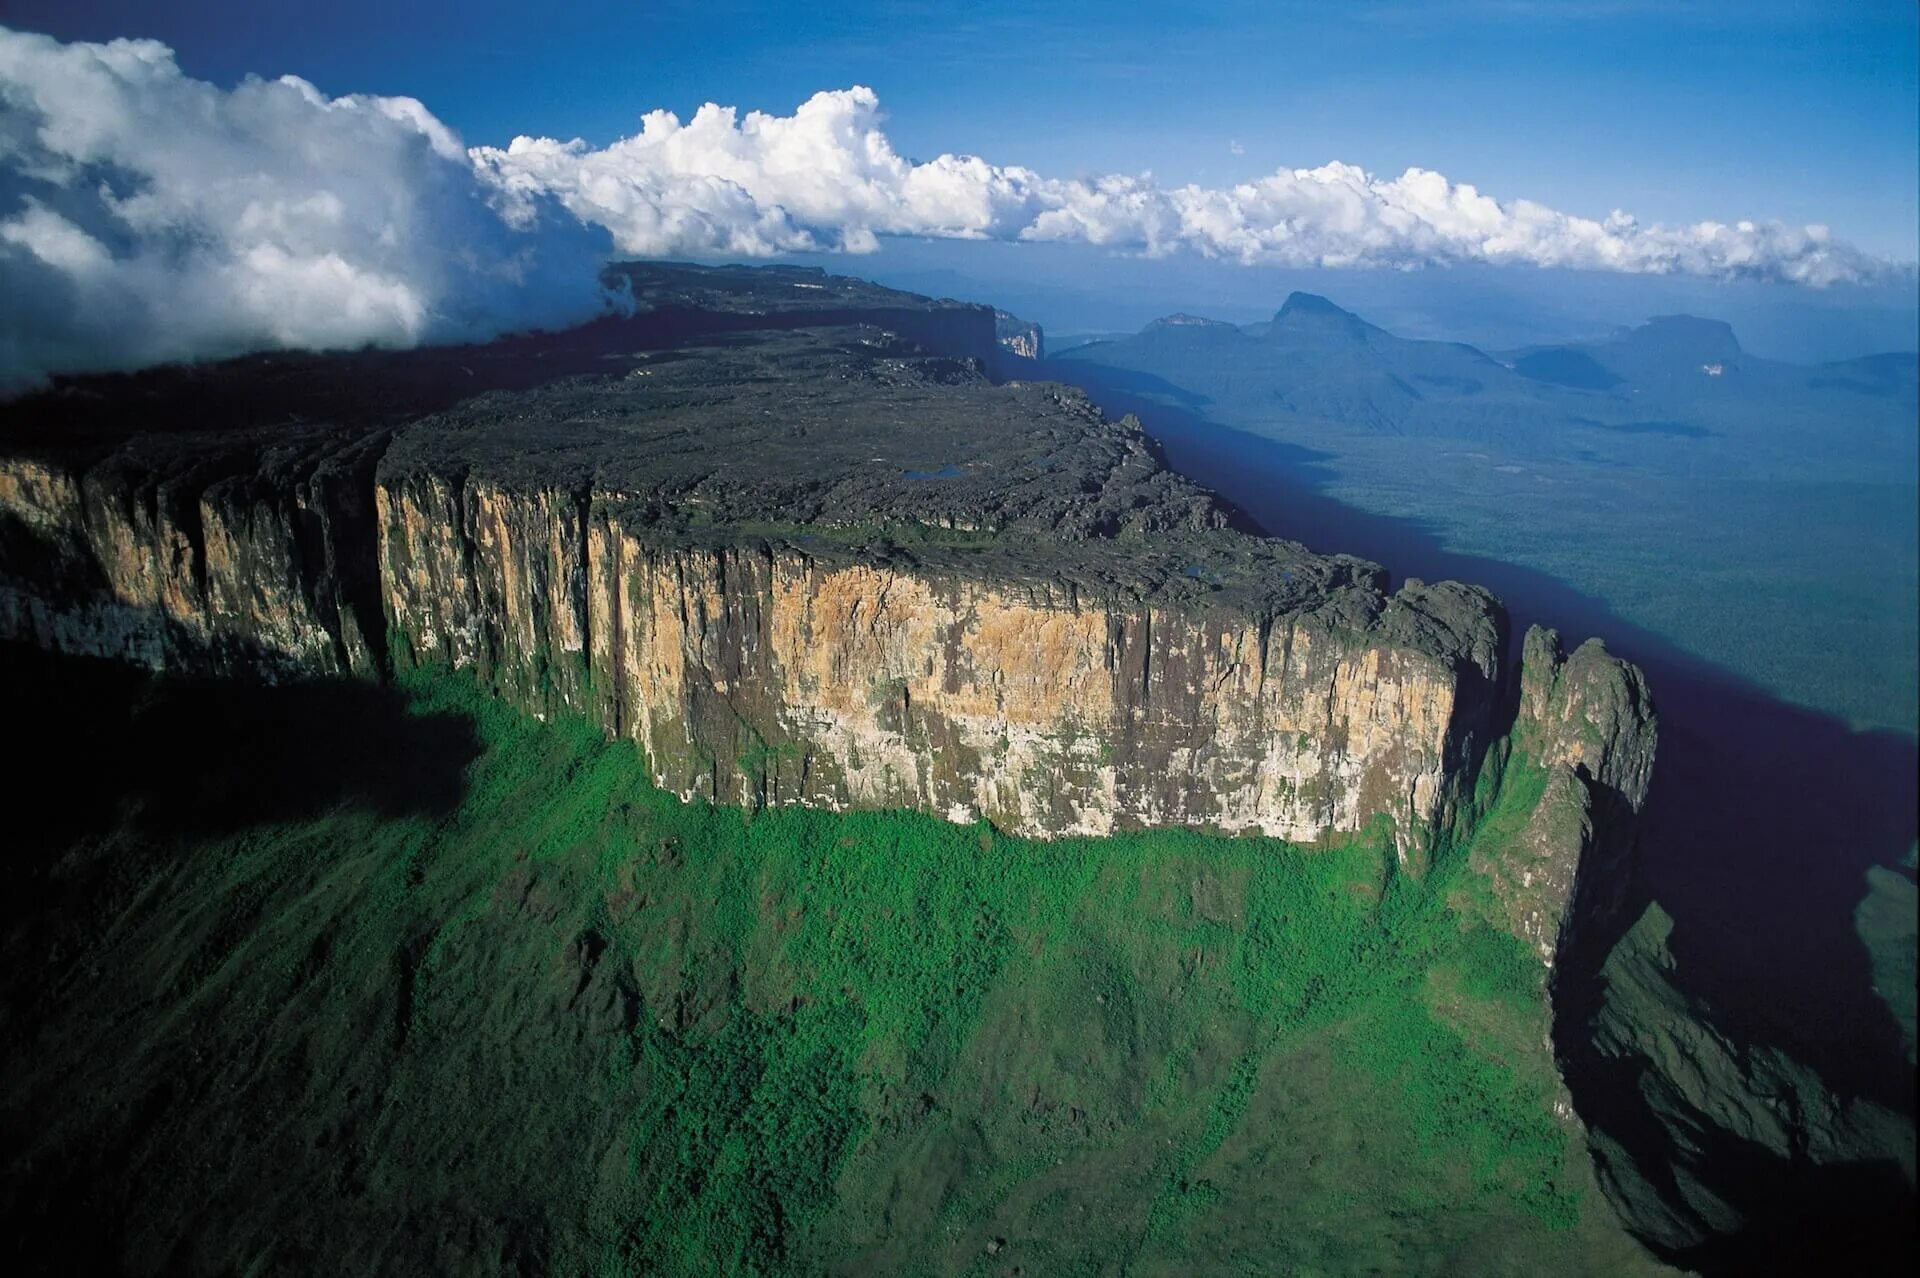 Столовые горы Тепуи в Венесуэле. Столовые горы Рорайма Венесуэлы. Венесуэла плато Тепуи. Венесуэла парк Канайма гора Рорайма. Бразильское плоскогорье реки